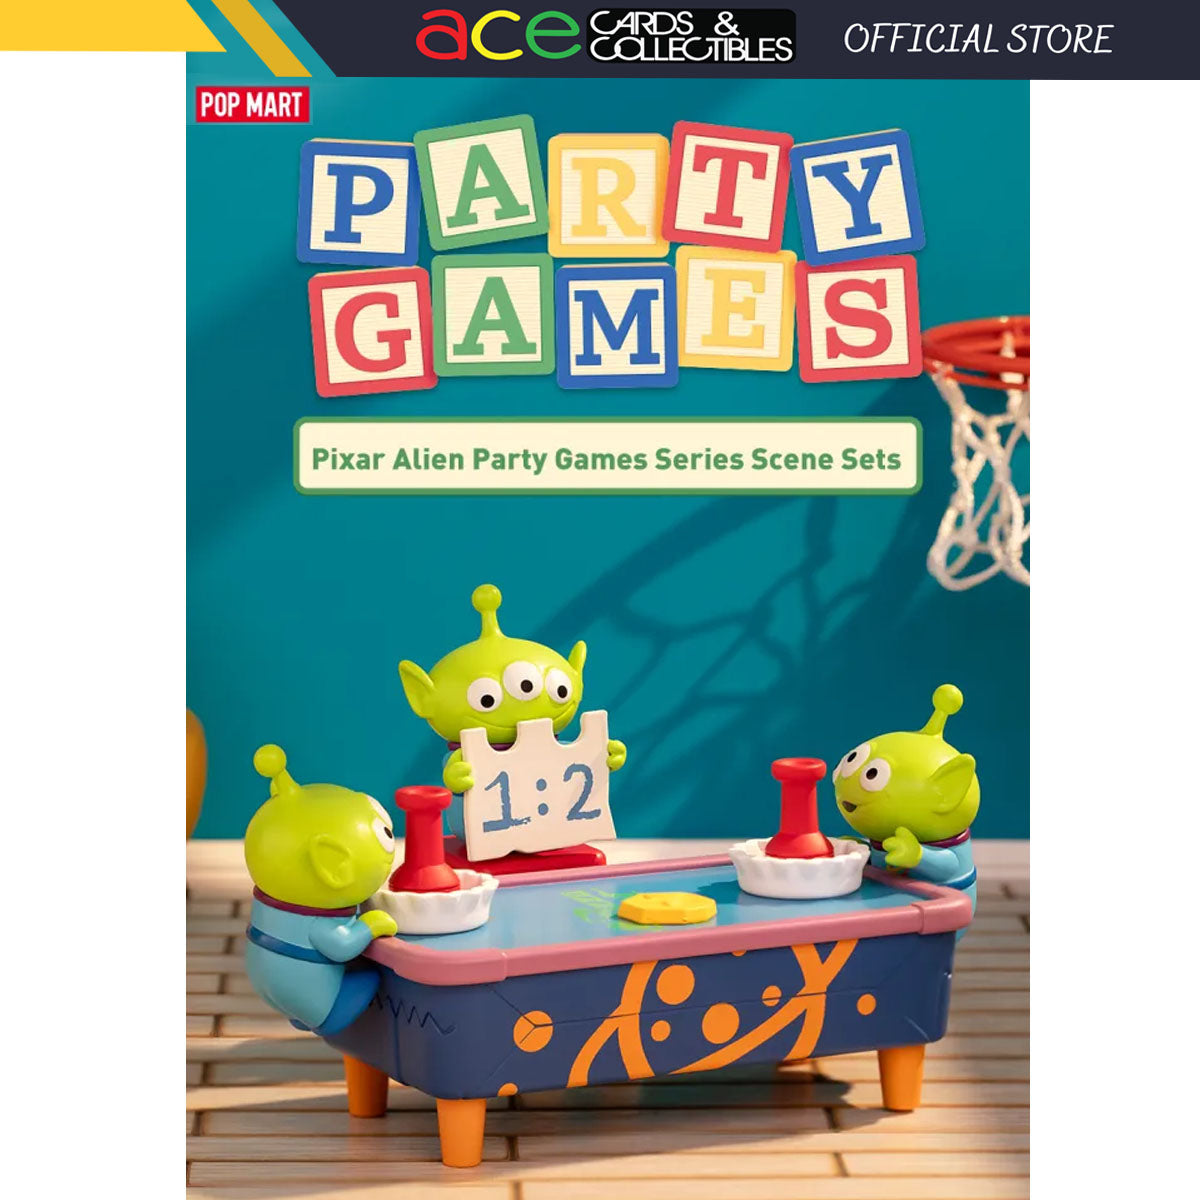 POP MART Pixar Alien Party Games Series Scene Sets-Single Box (Random)-Pop Mart-Ace Cards & Collectibles